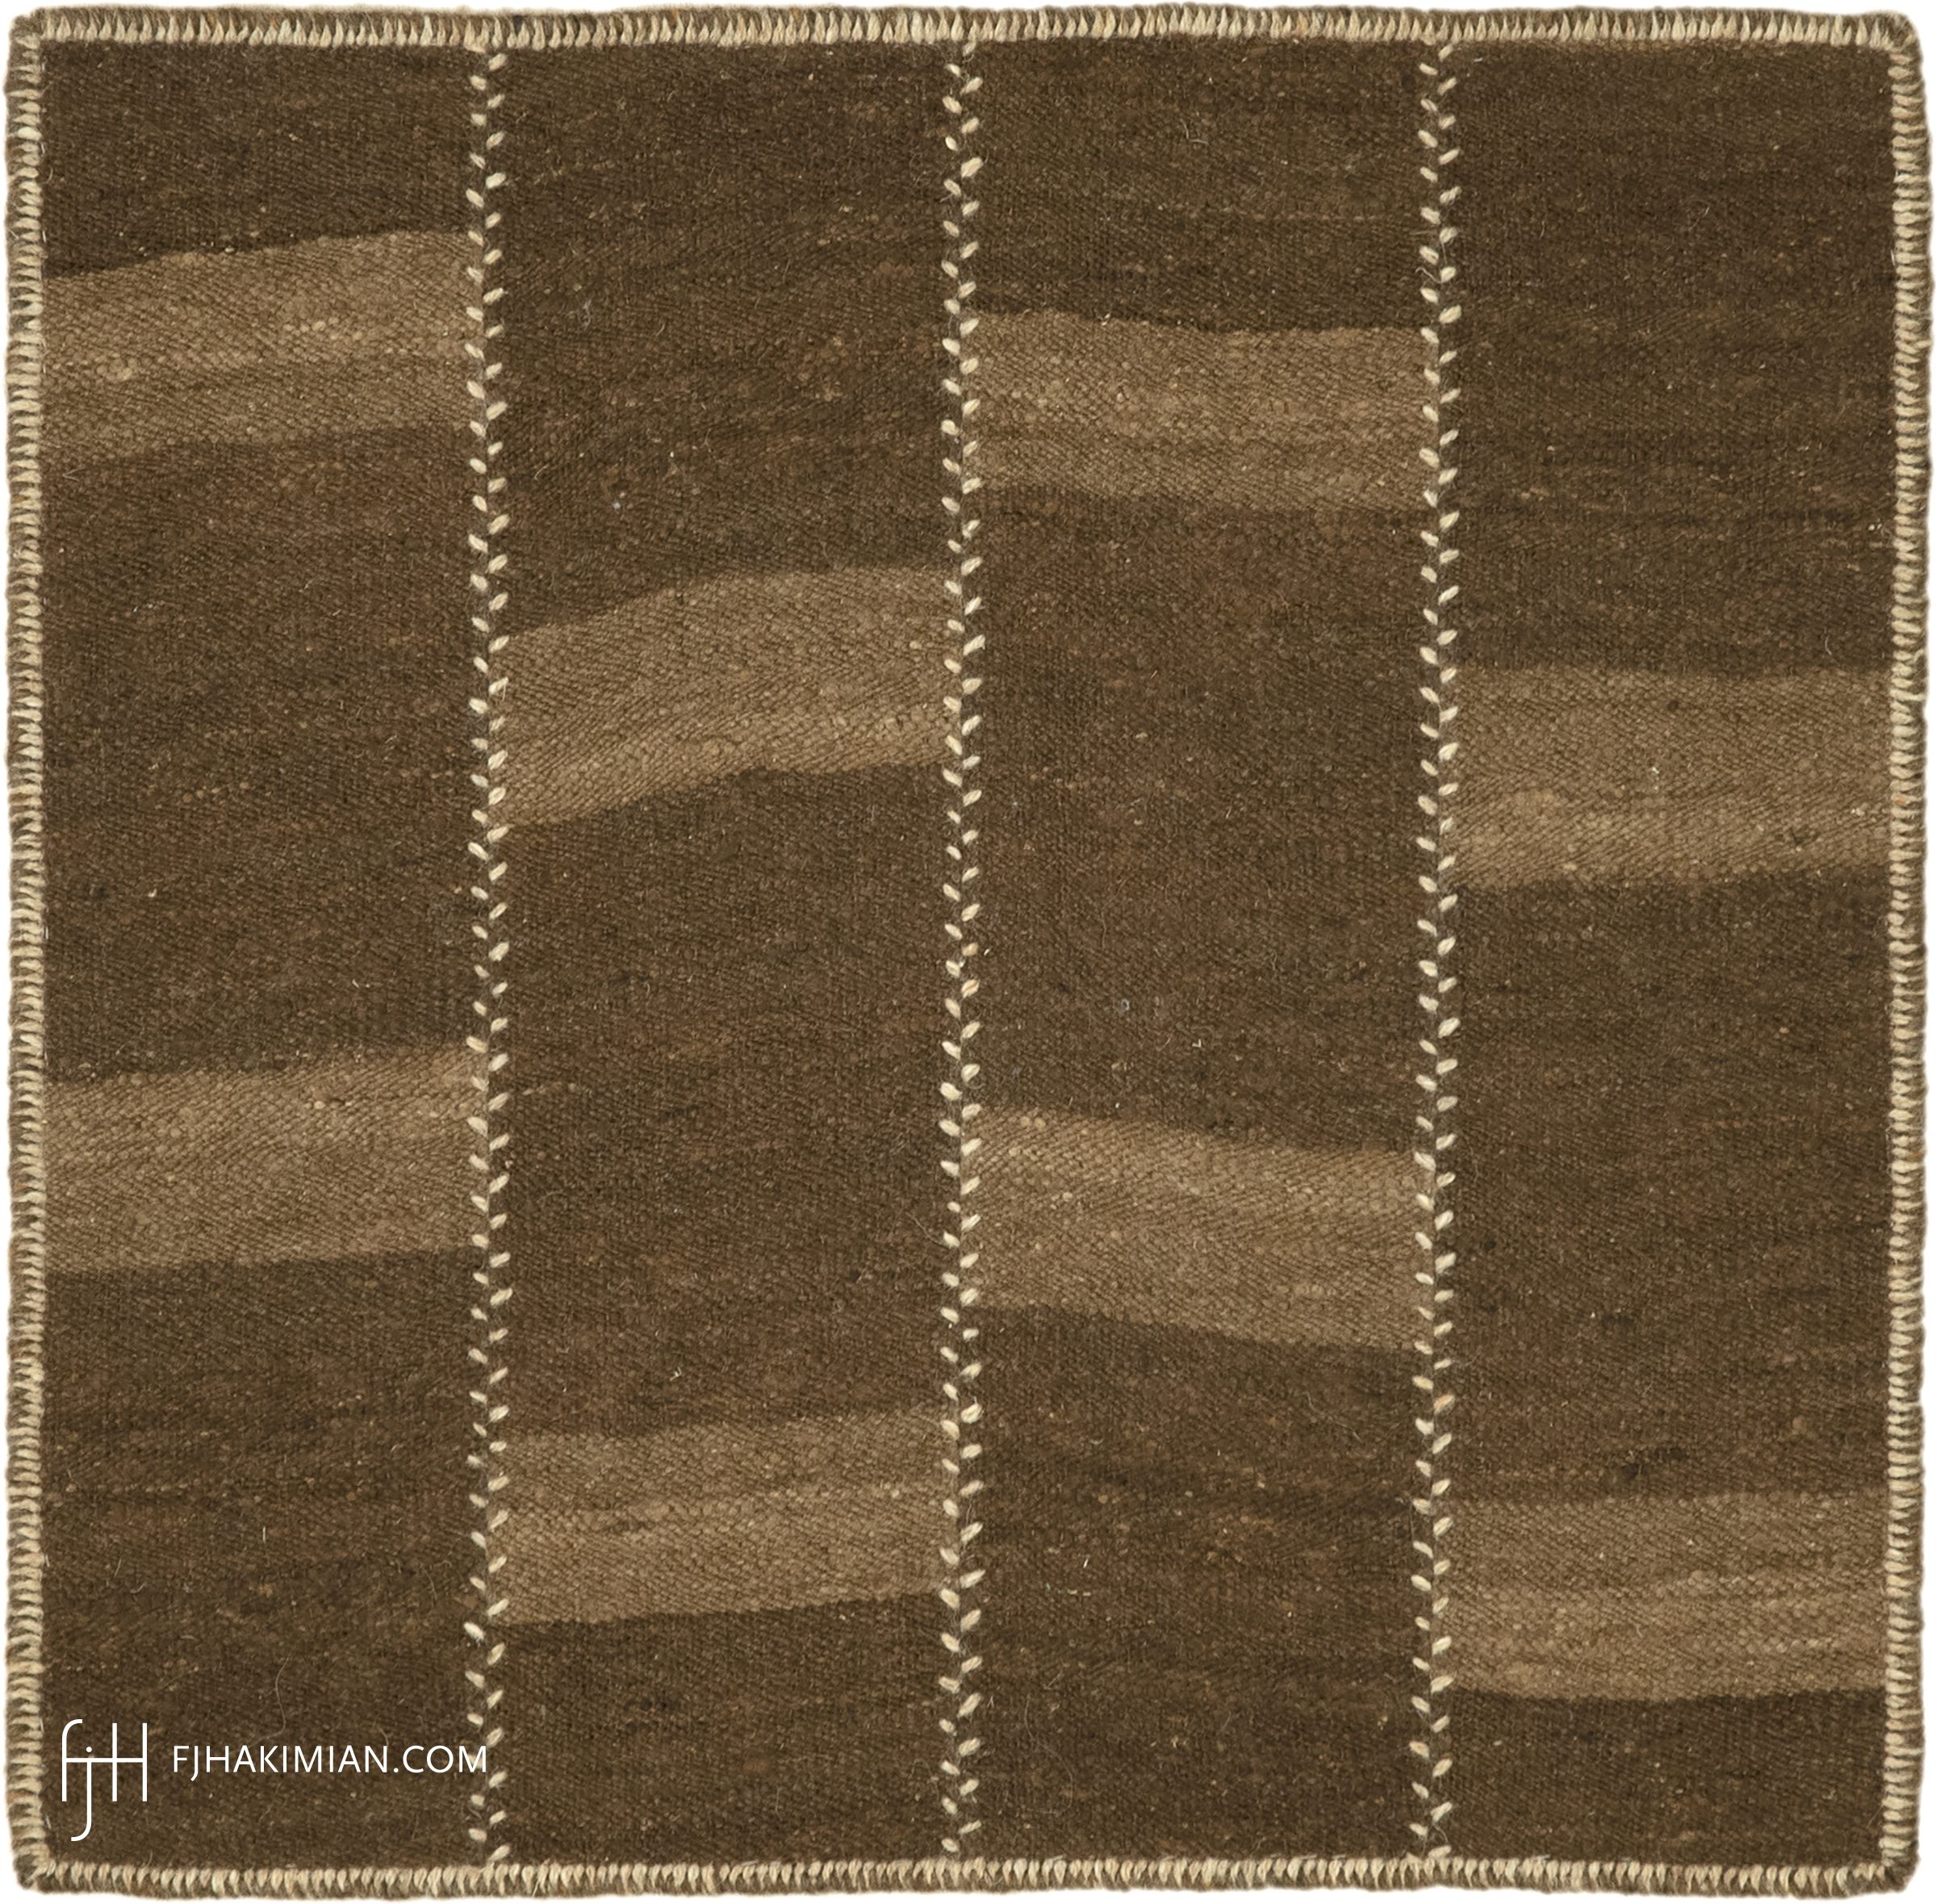 FJ Hakimian | 77164 | Custom Carpet